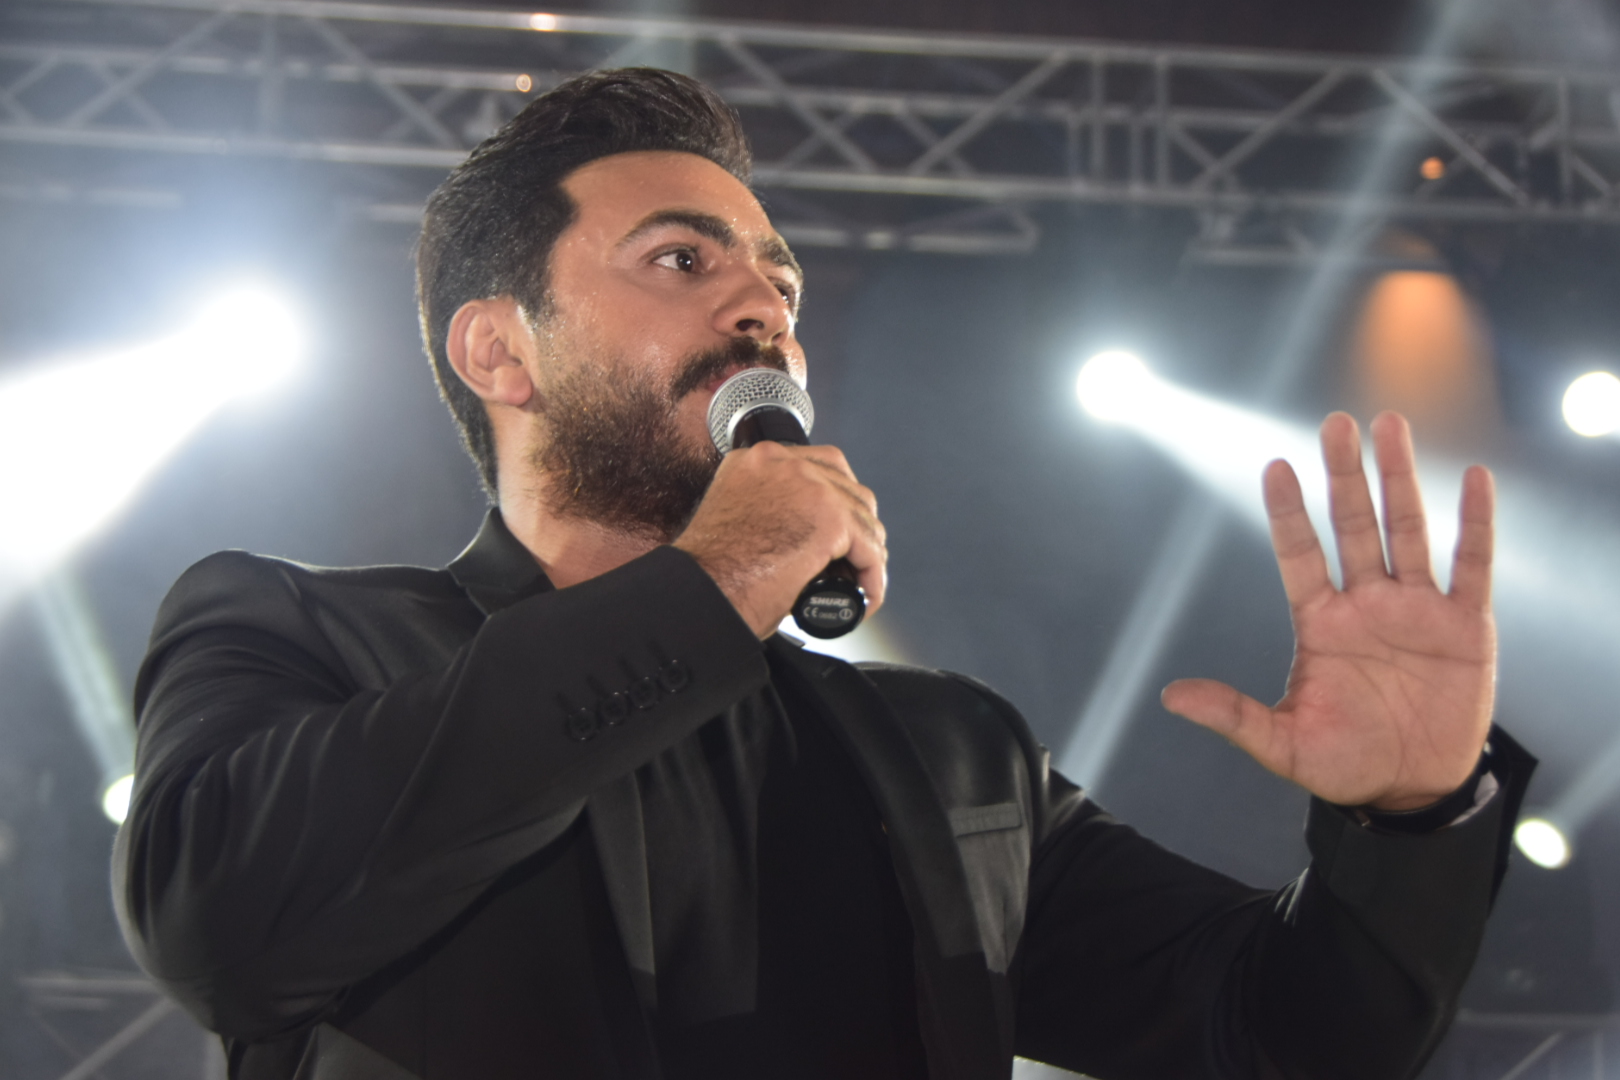 بالصور.. تامر حسني يغني في أجواء صيفية مشتعلة بالإسكندرية